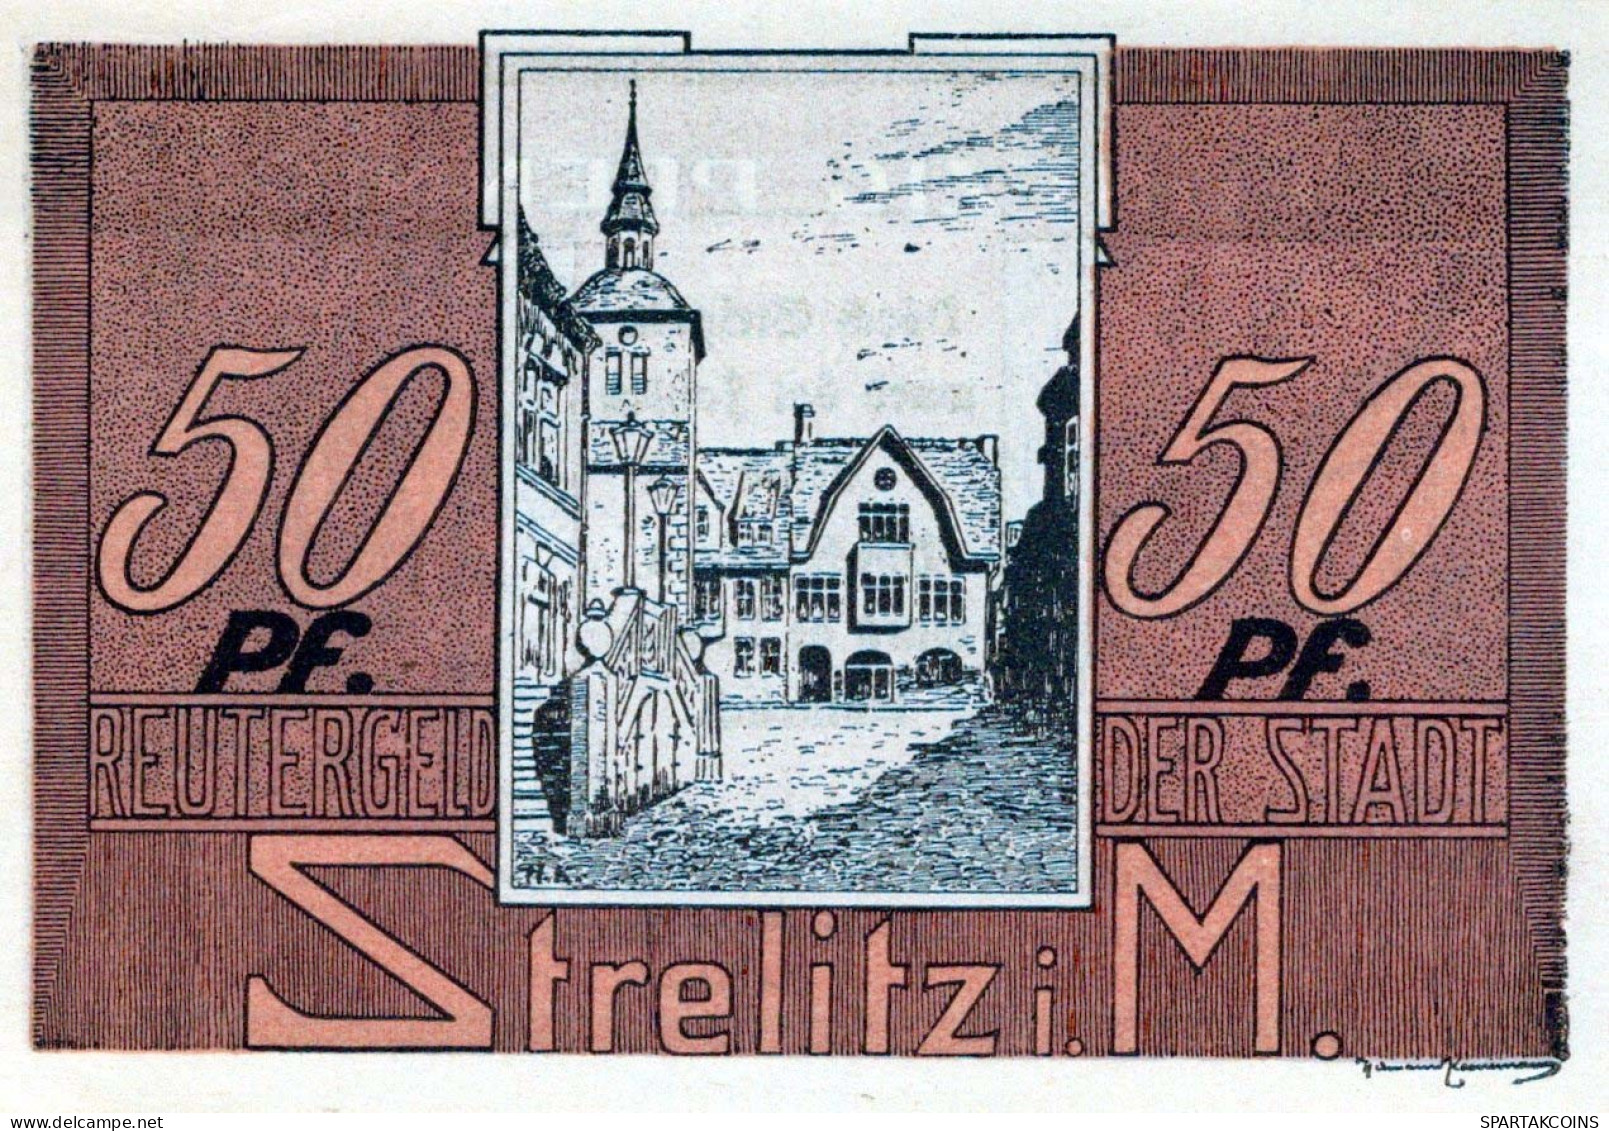 50 PFENNIG 1921 Stadt STRELITZ Mecklenburg-Strelitz UNC DEUTSCHLAND #PI982 - [11] Local Banknote Issues